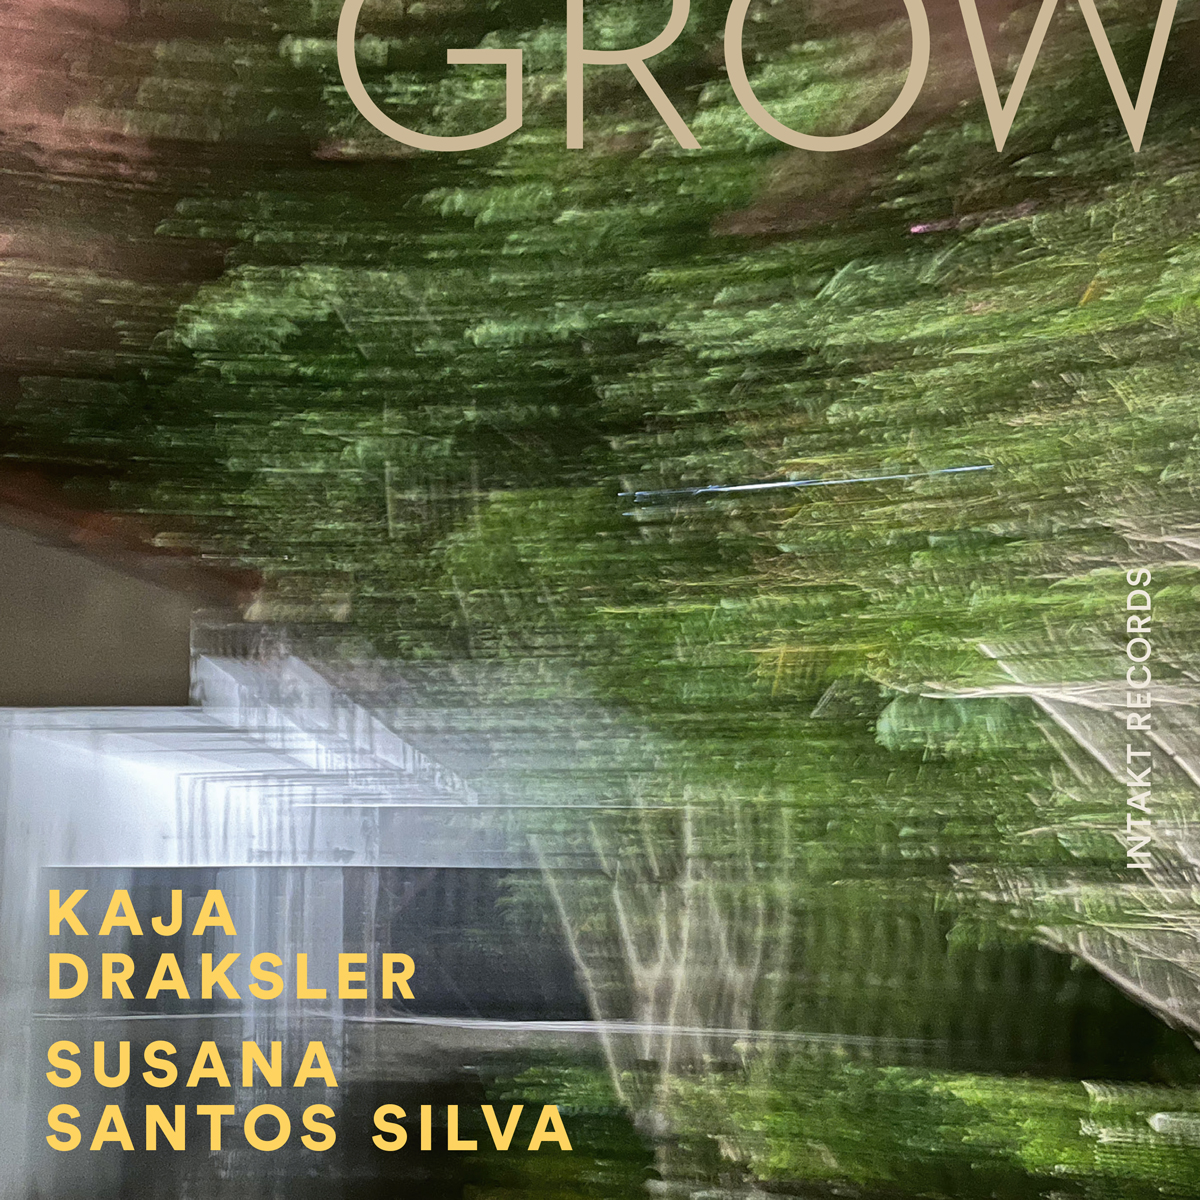 KAJA DRAKSLER – SUSANA SANTOS SILVA
GROW. Intakt CD 391